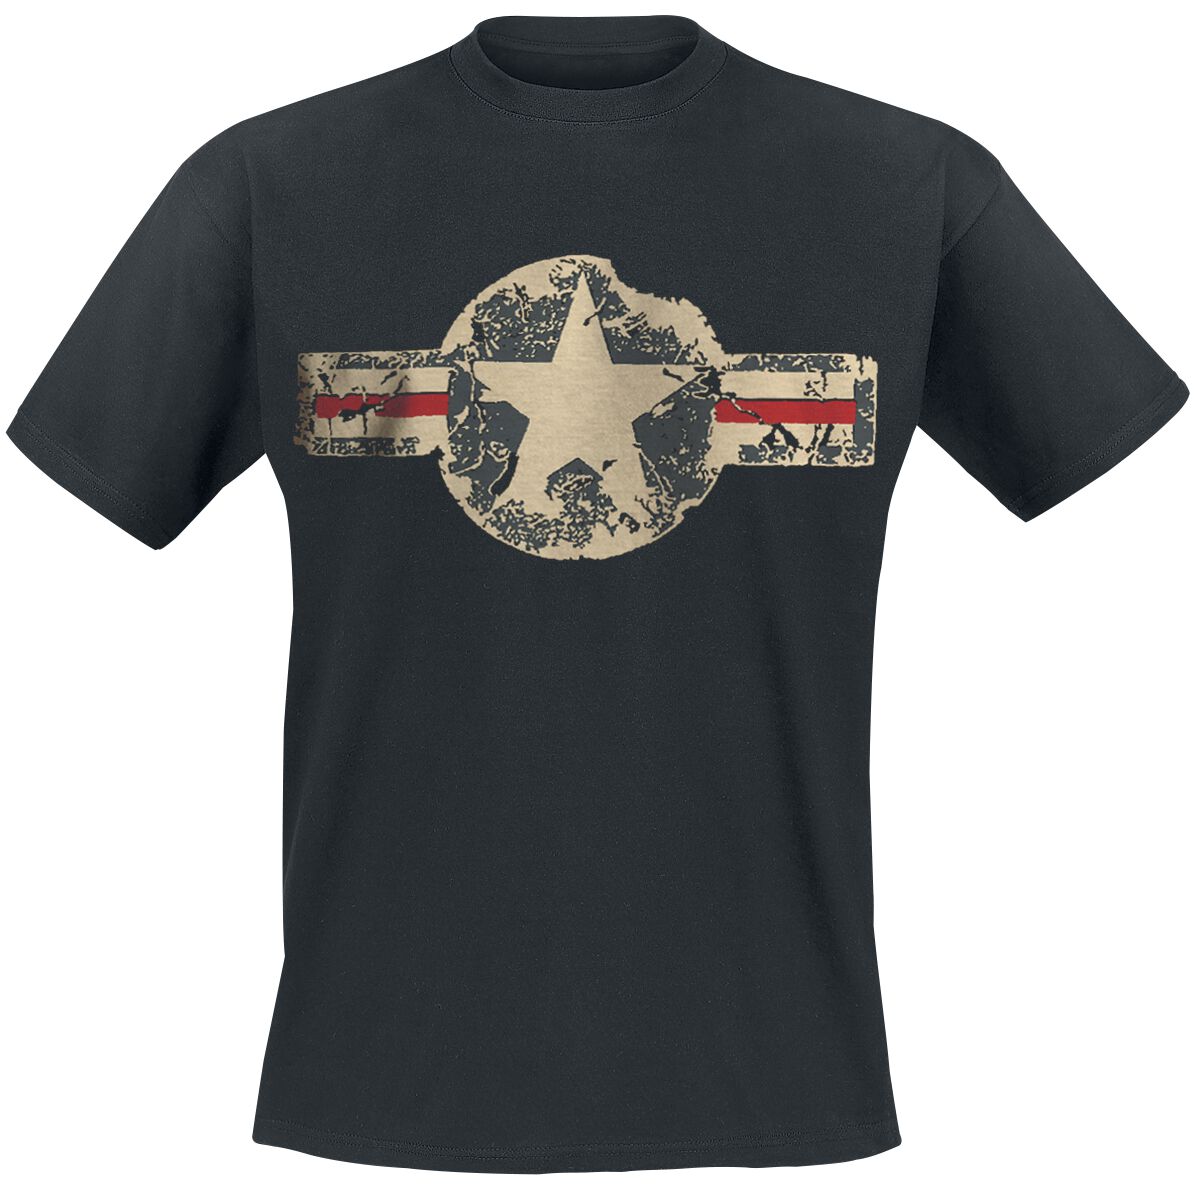 Gasoline Bandit - Rockabilly T-Shirt - USAF - S bis 3XL - für Männer - Größe 3XL - schwarz